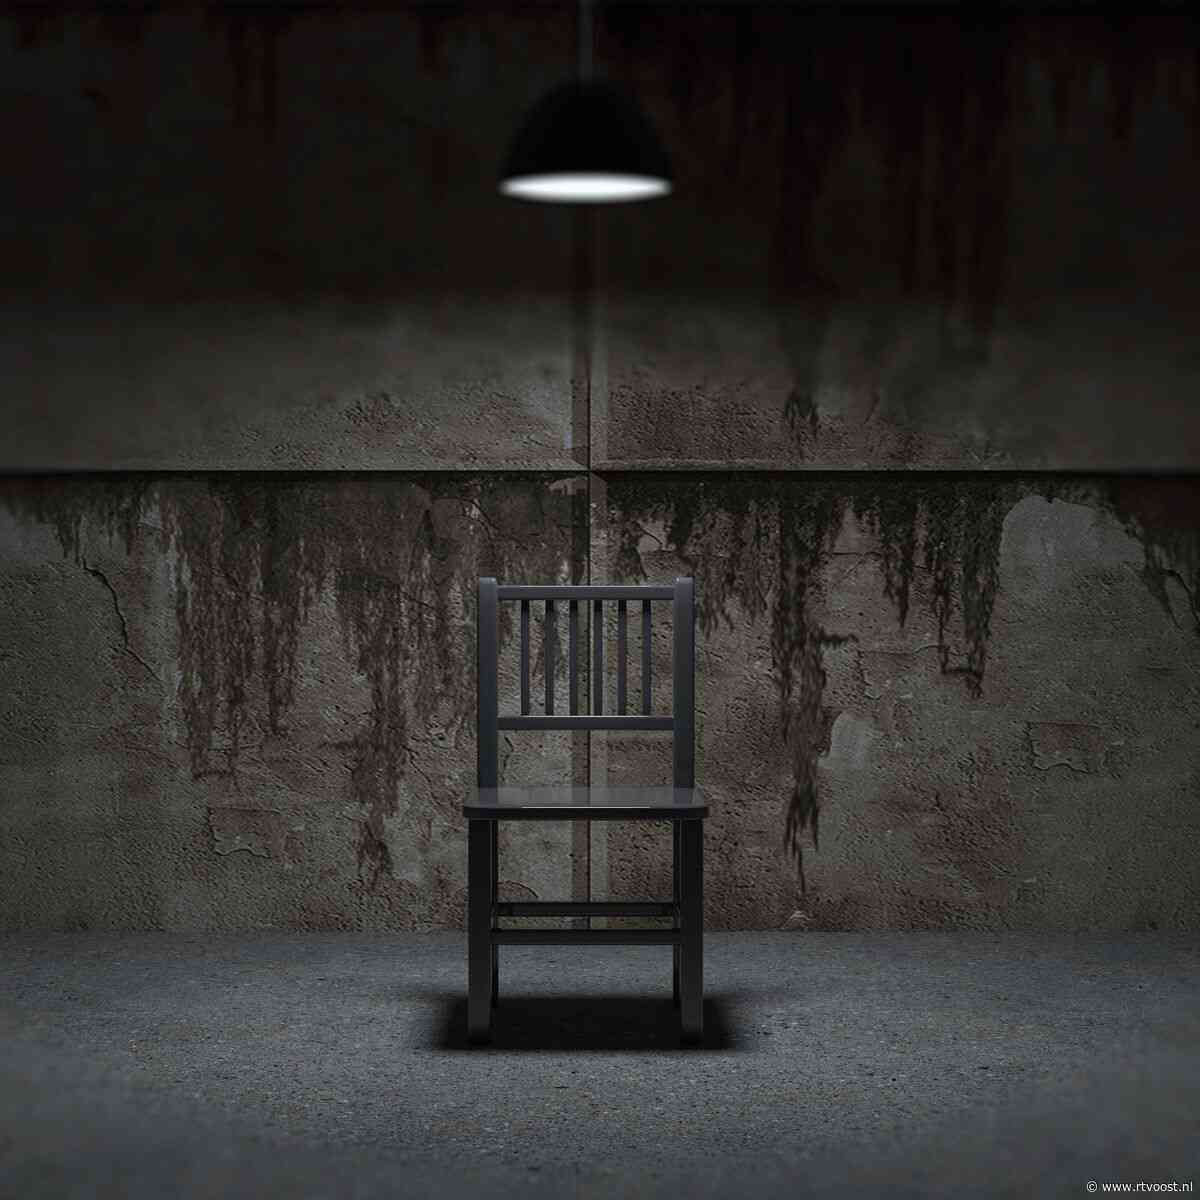 Slachtoffers naakt op stoel in donkere kelder: OM eist celstraffen voor gijzelingen in Hengelose onderwereld